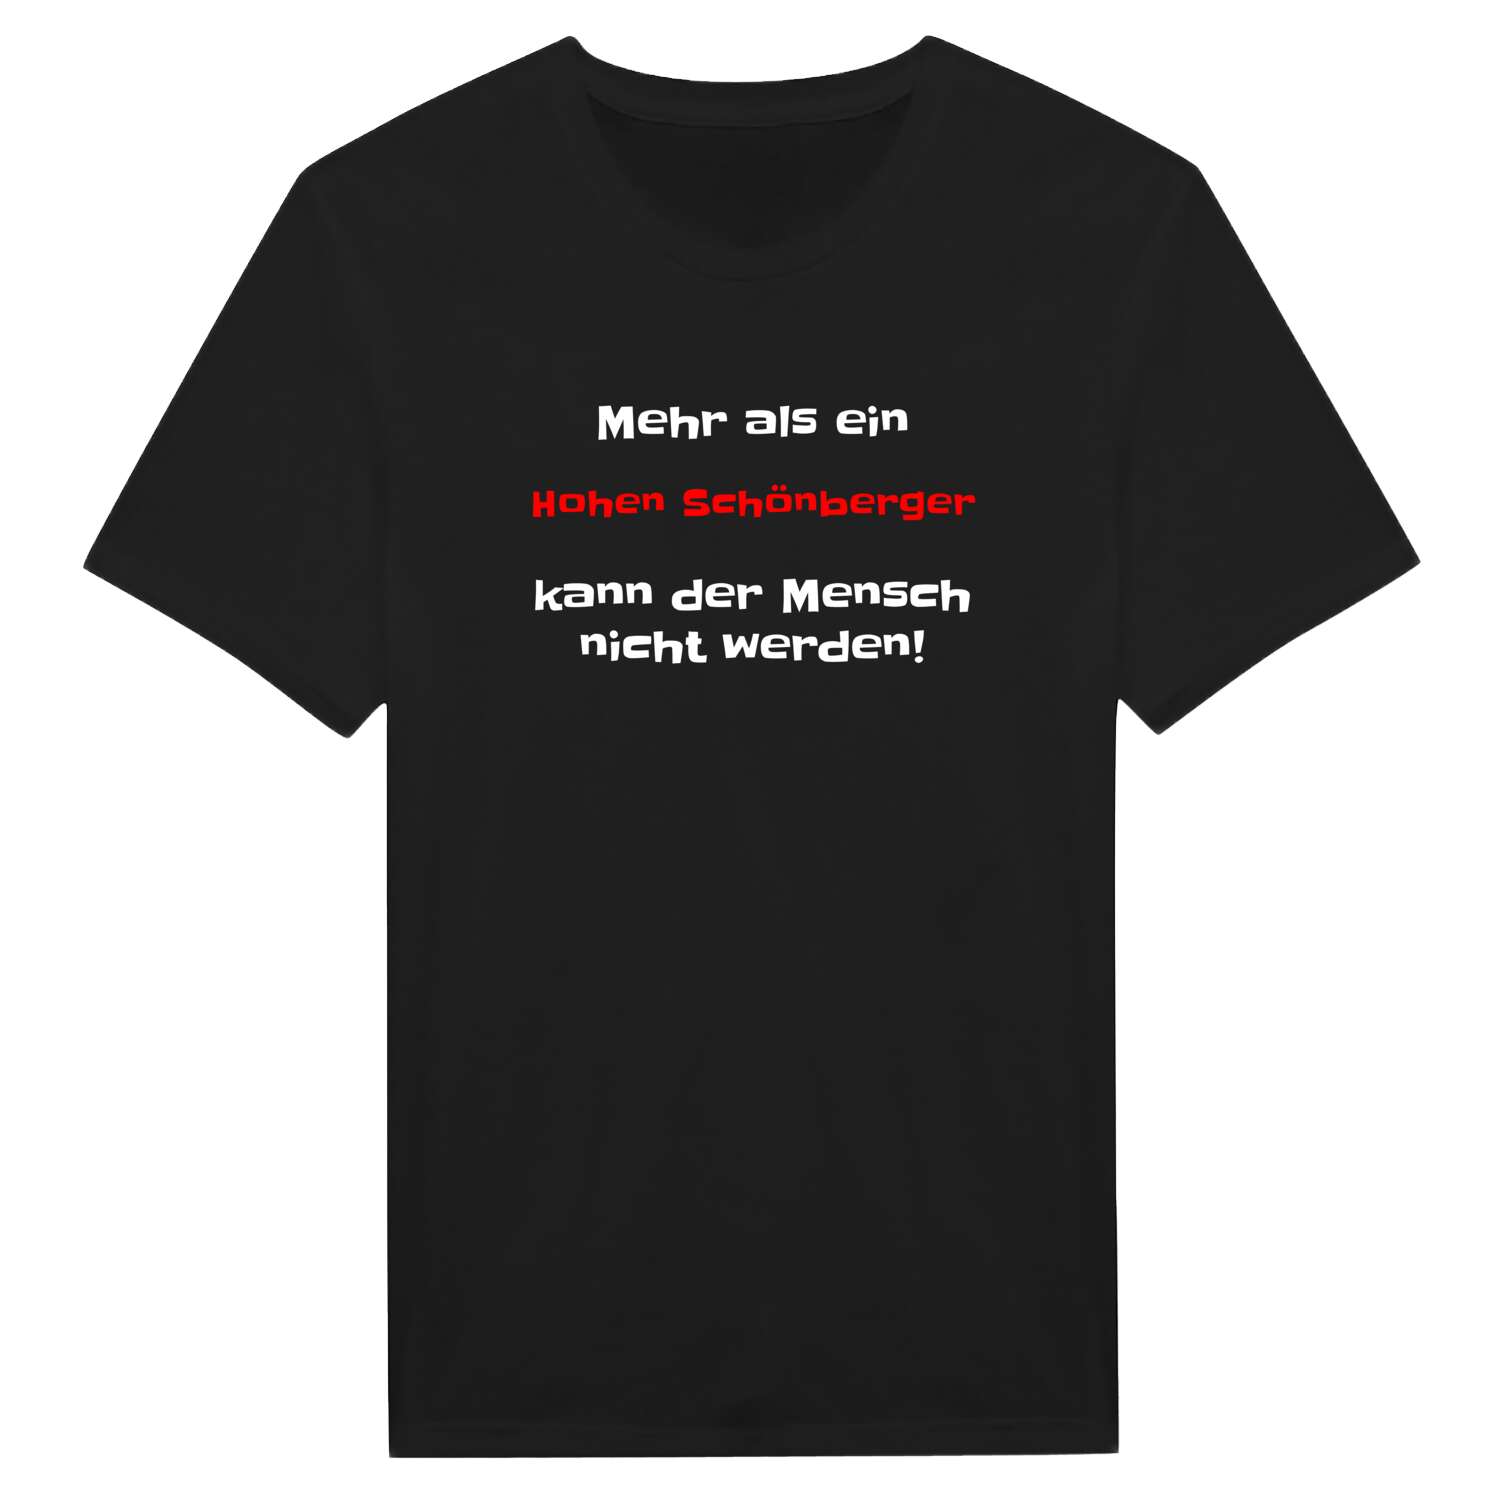 Hohen Schönberg T-Shirt »Mehr als ein«